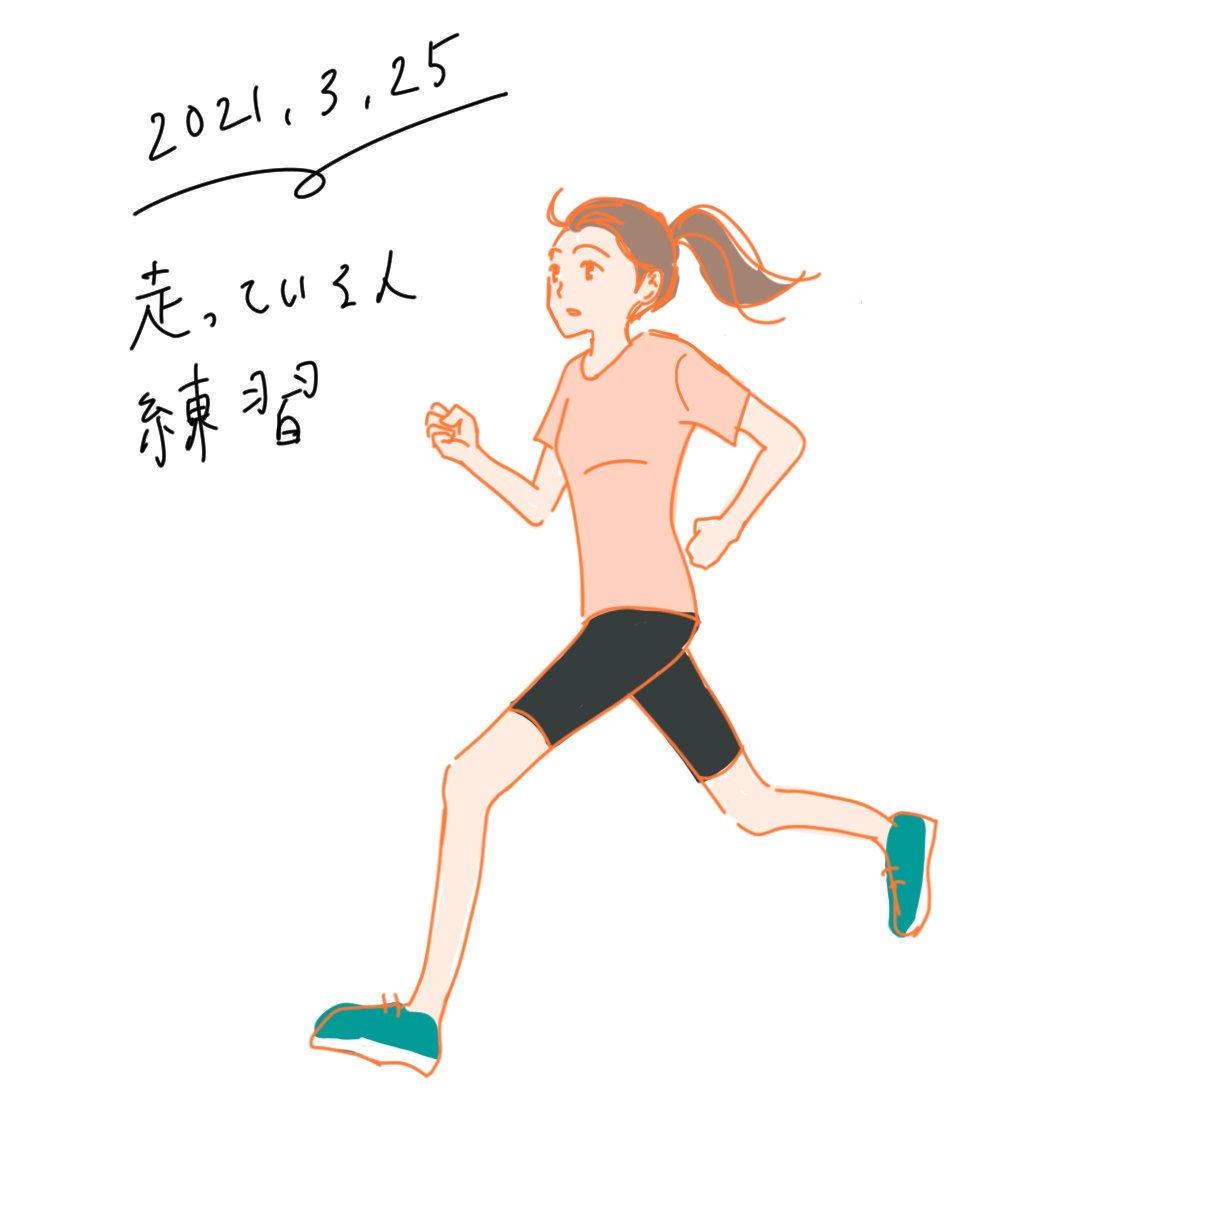 Hiyotamari 今日は苦手分野の克服 正面の顔 と 走っている人 の練習 どちらも特に左右バランスを取るのが大事 イラスト イラスト練習中 絵描きさんと繫がりたい イラスト好きな人と繋がりたい T Co Czukmu3lor Twitter